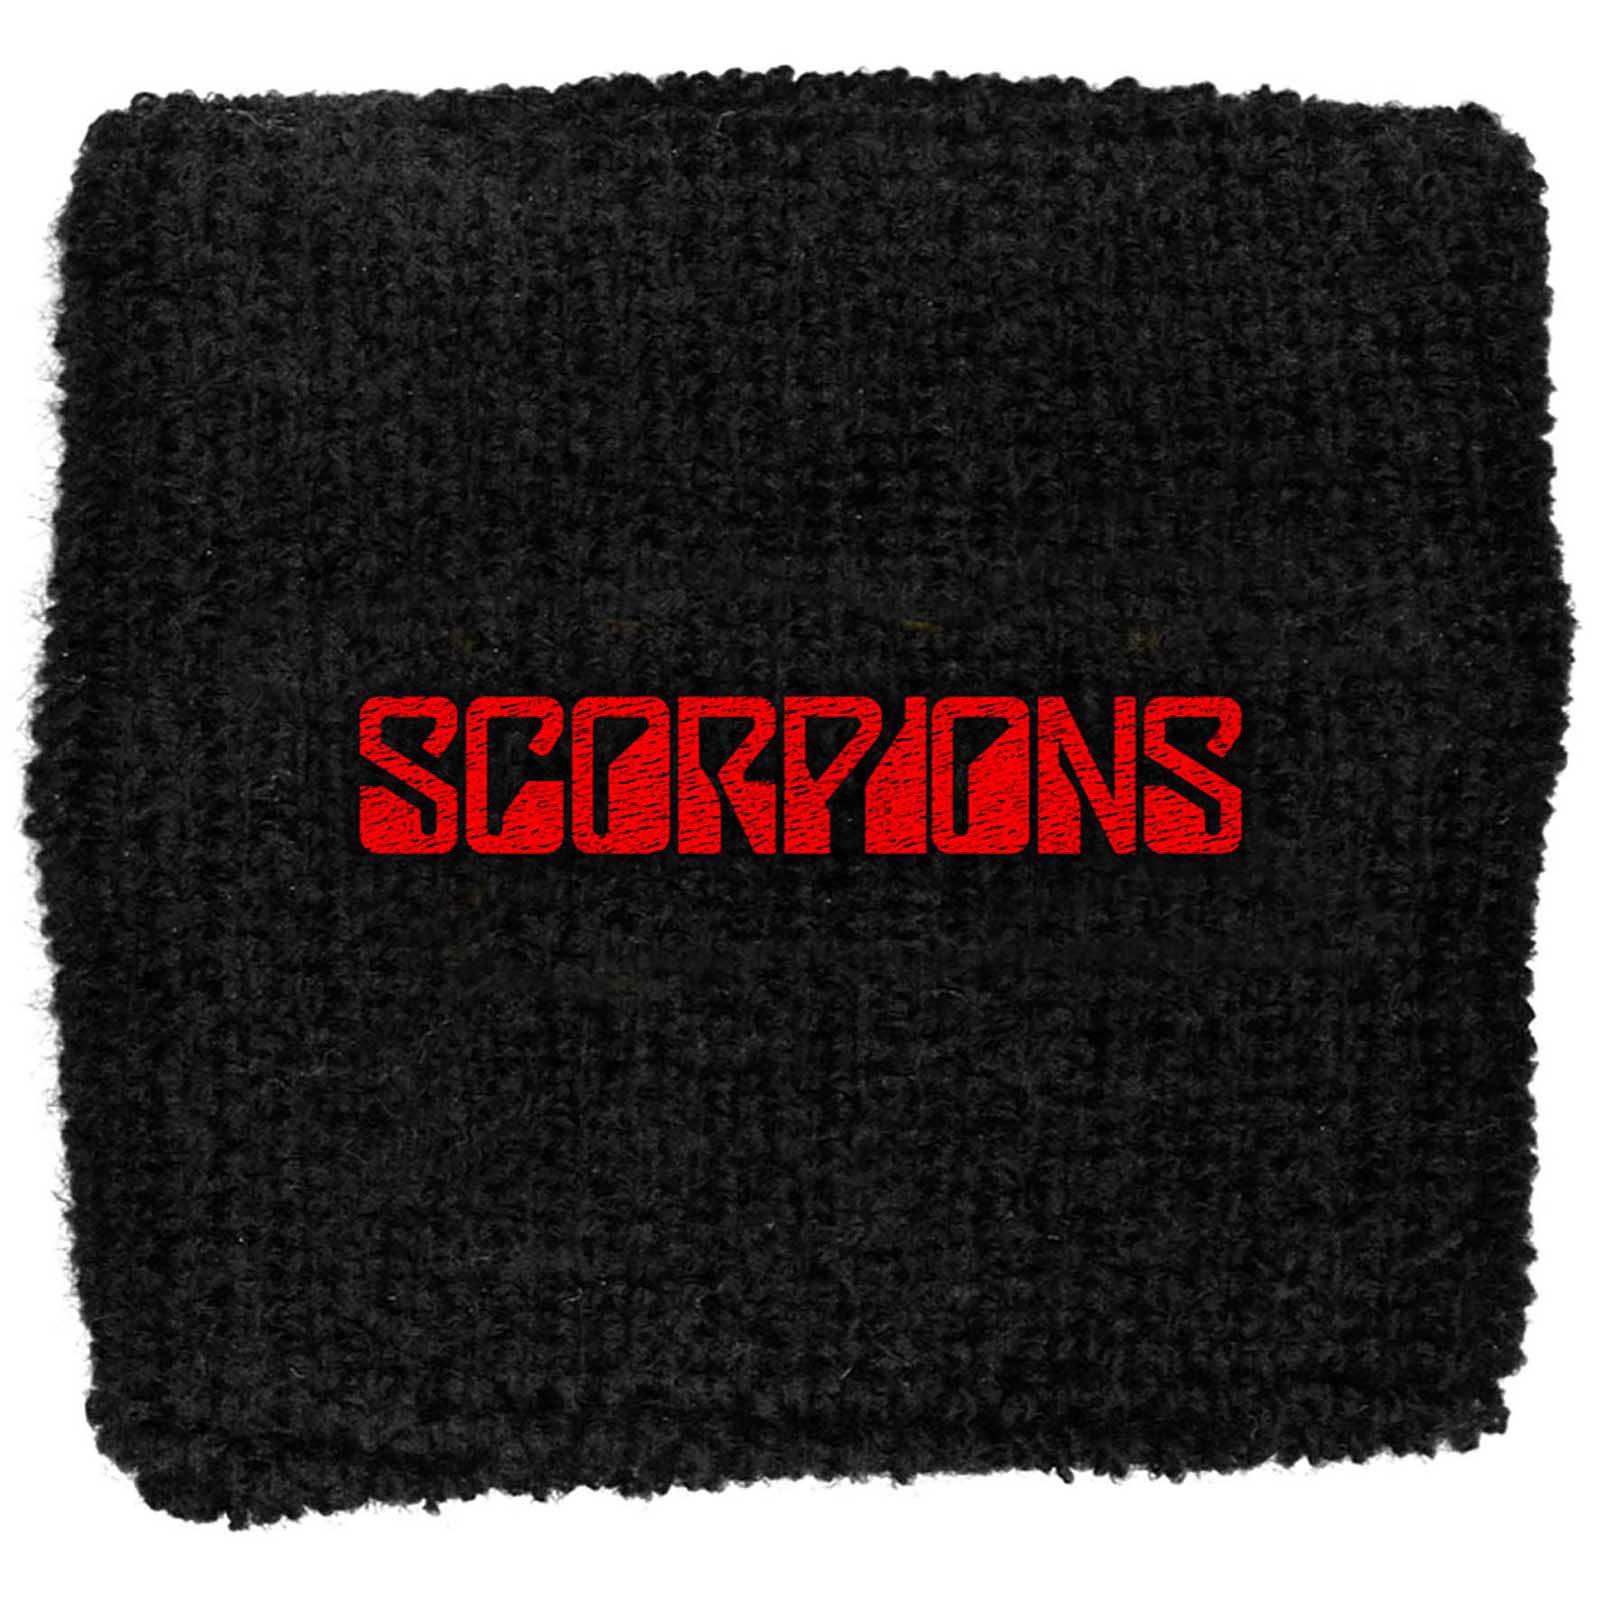 (スコーピオンズ) Scorpions オフィシャル商品 ロゴ リストバンド 布地 スエットバンド 【海外通販】